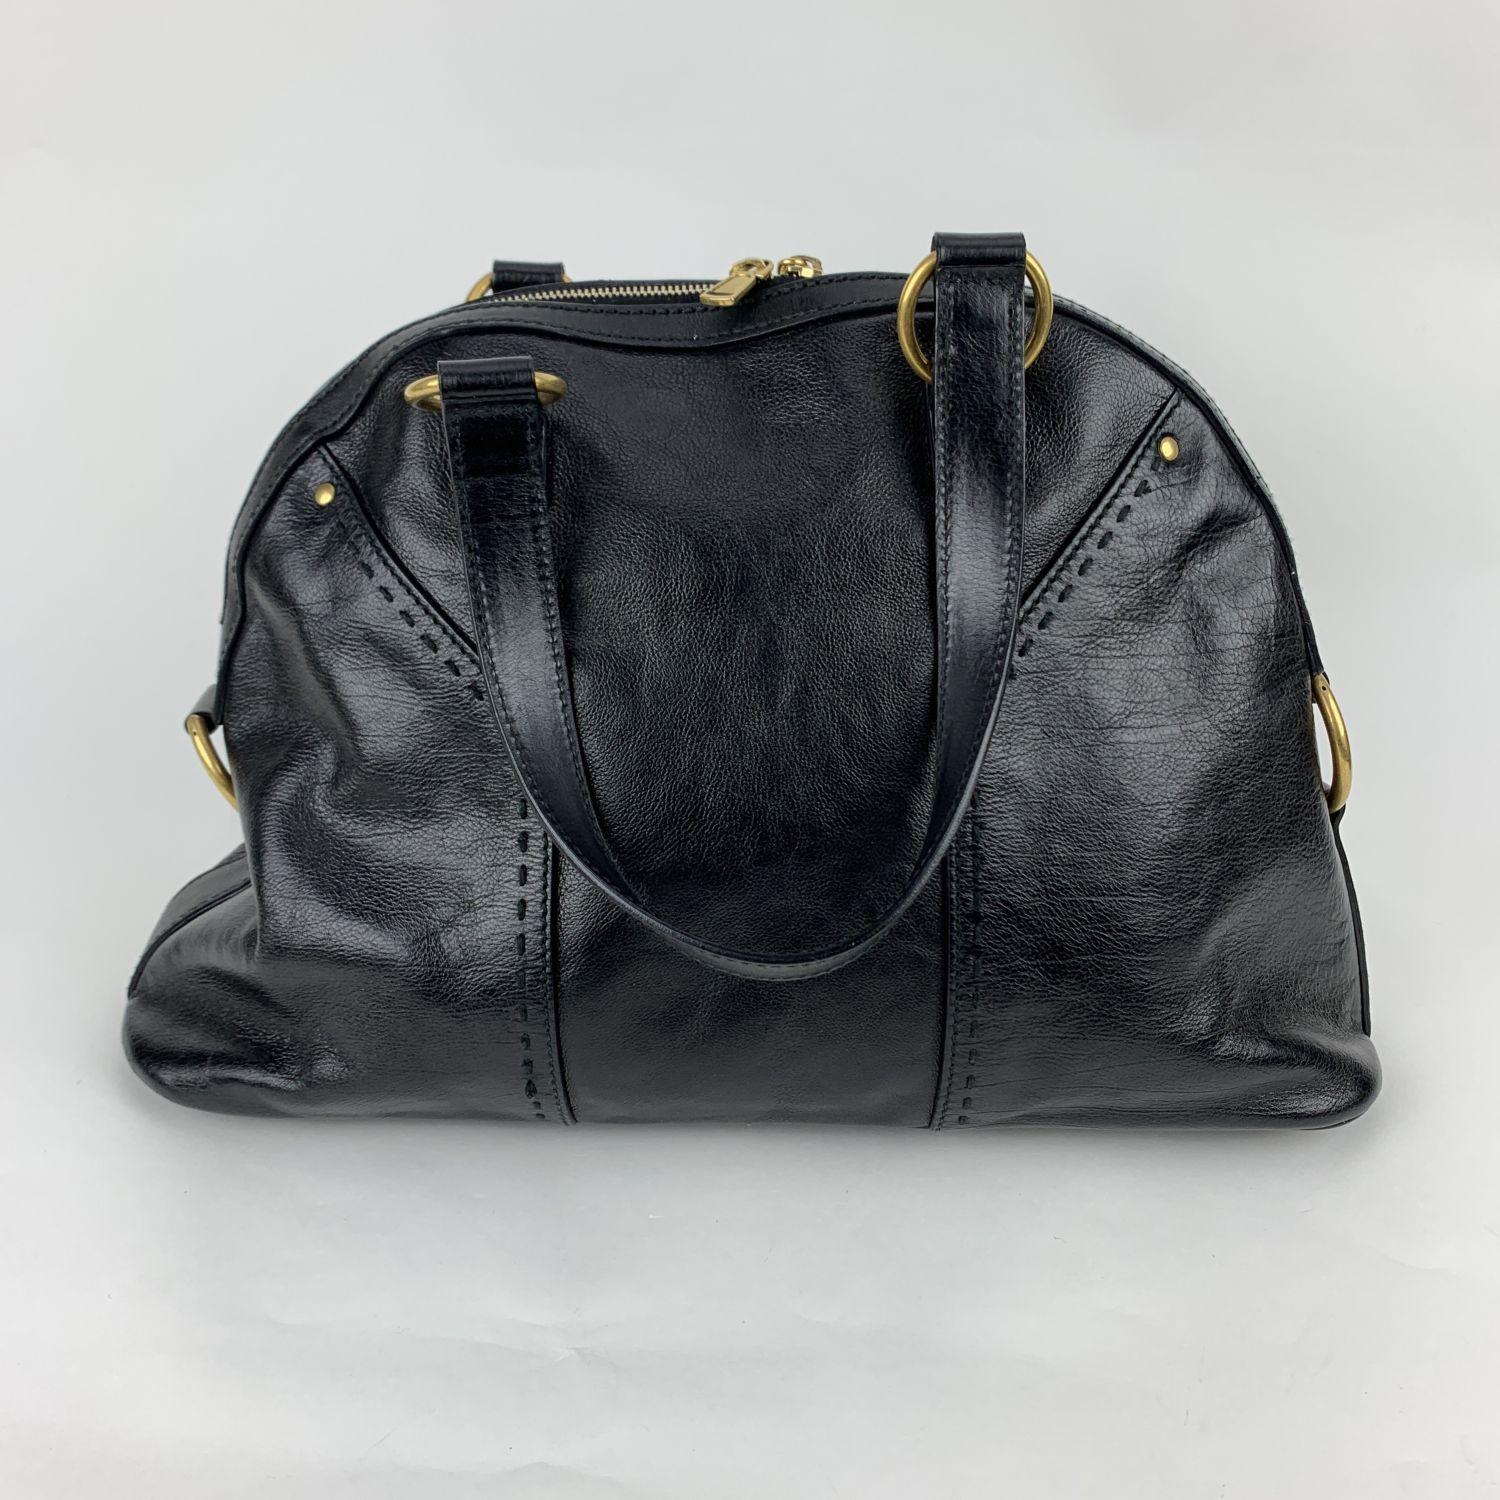 Yves Saint Laurent Black Leather Muse Tote Shoulder Bag 1